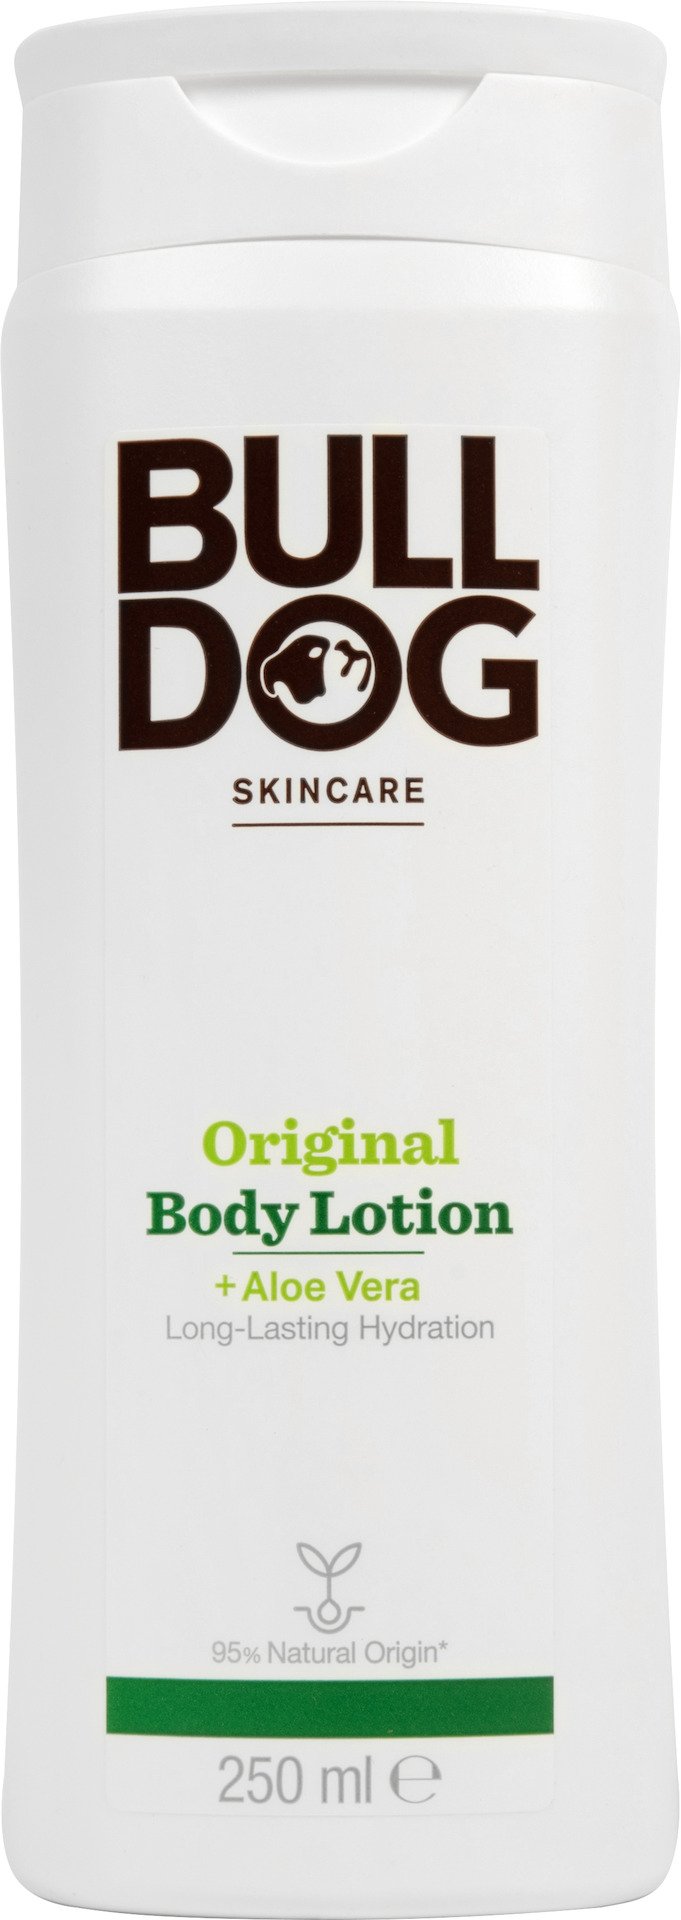 Bulldog Original body lotion 250 ml